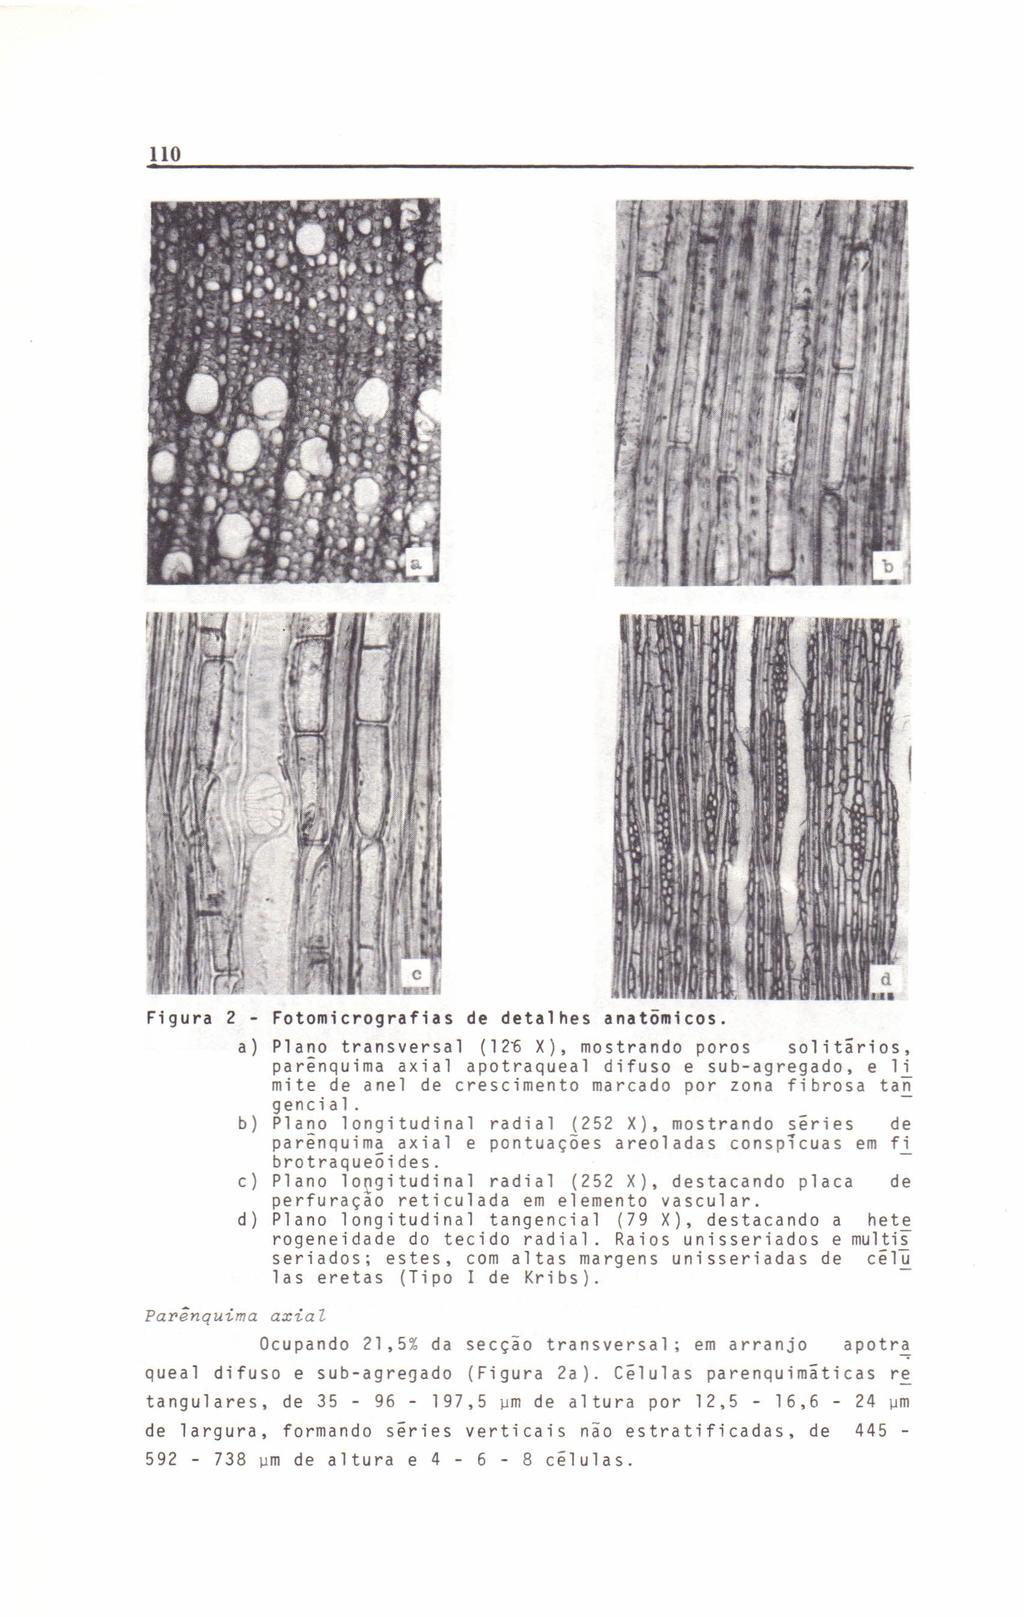 110 Figura 2 - a) parênquima Fotomicrografias de detalhes anatõmicos.